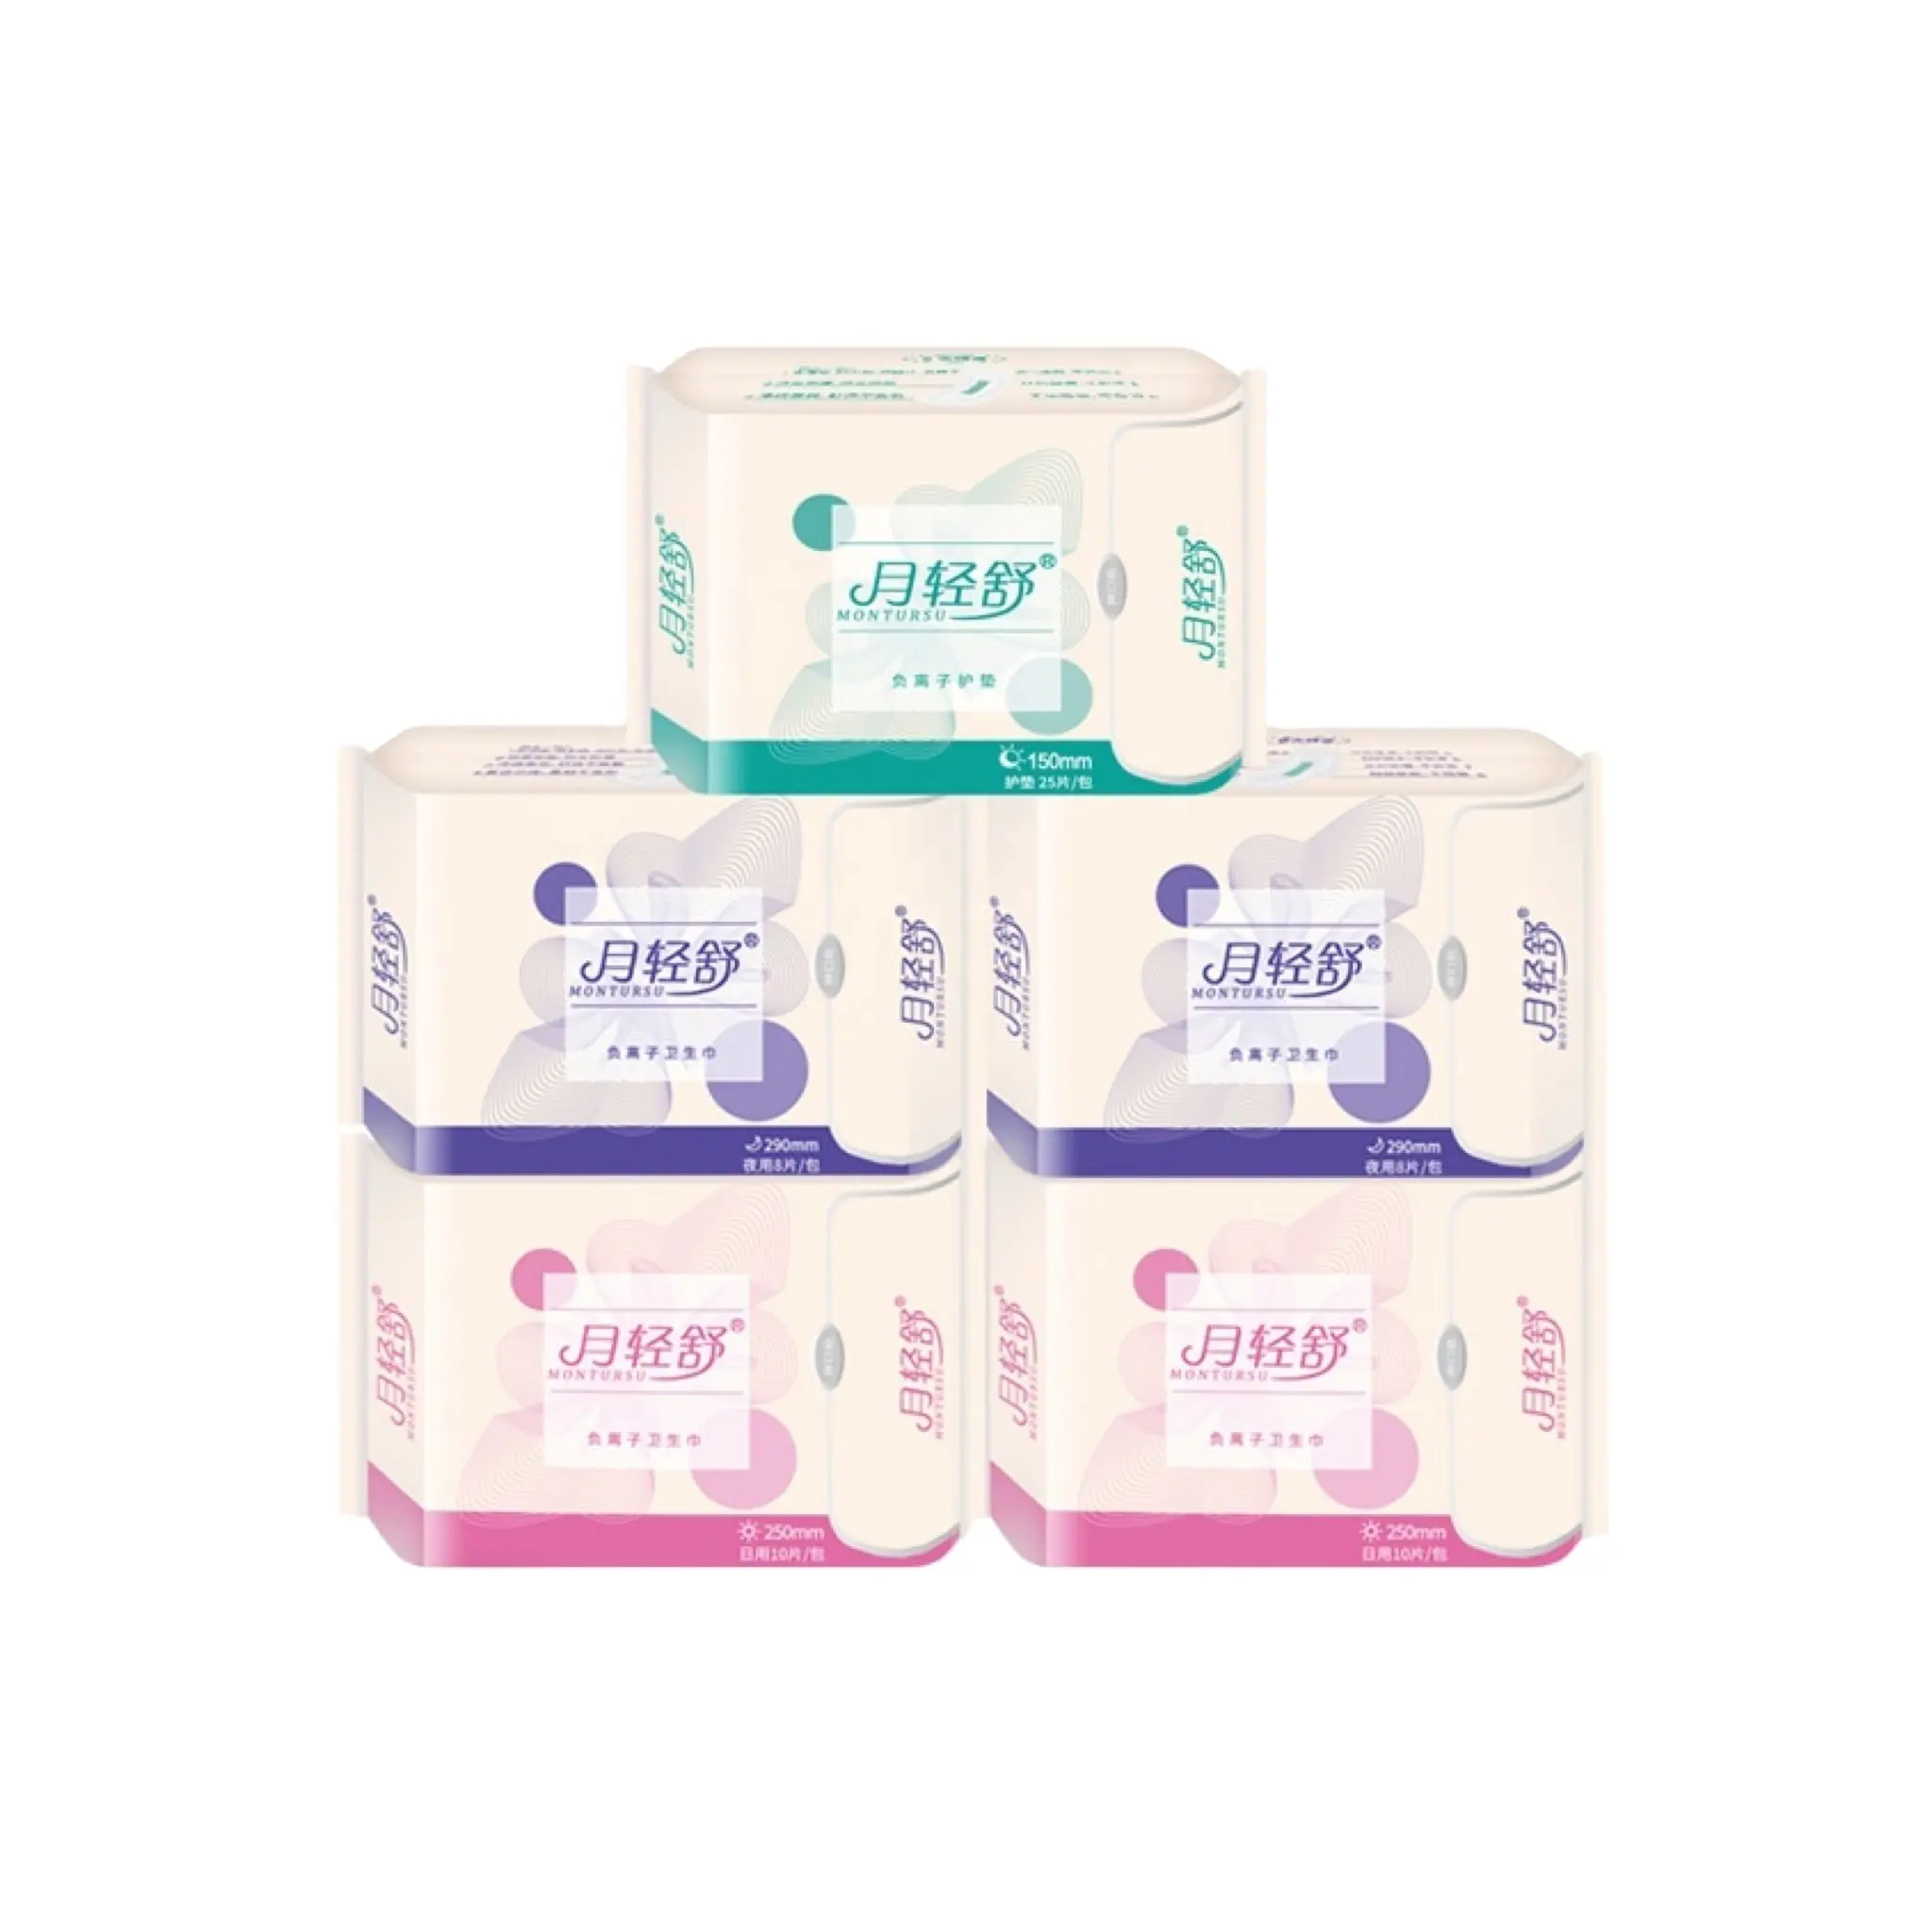 Absorventes higiênicos de marca própria Angel Moon absorventes higiênicos para pós-parto Fabricação de absorventes higiênicos